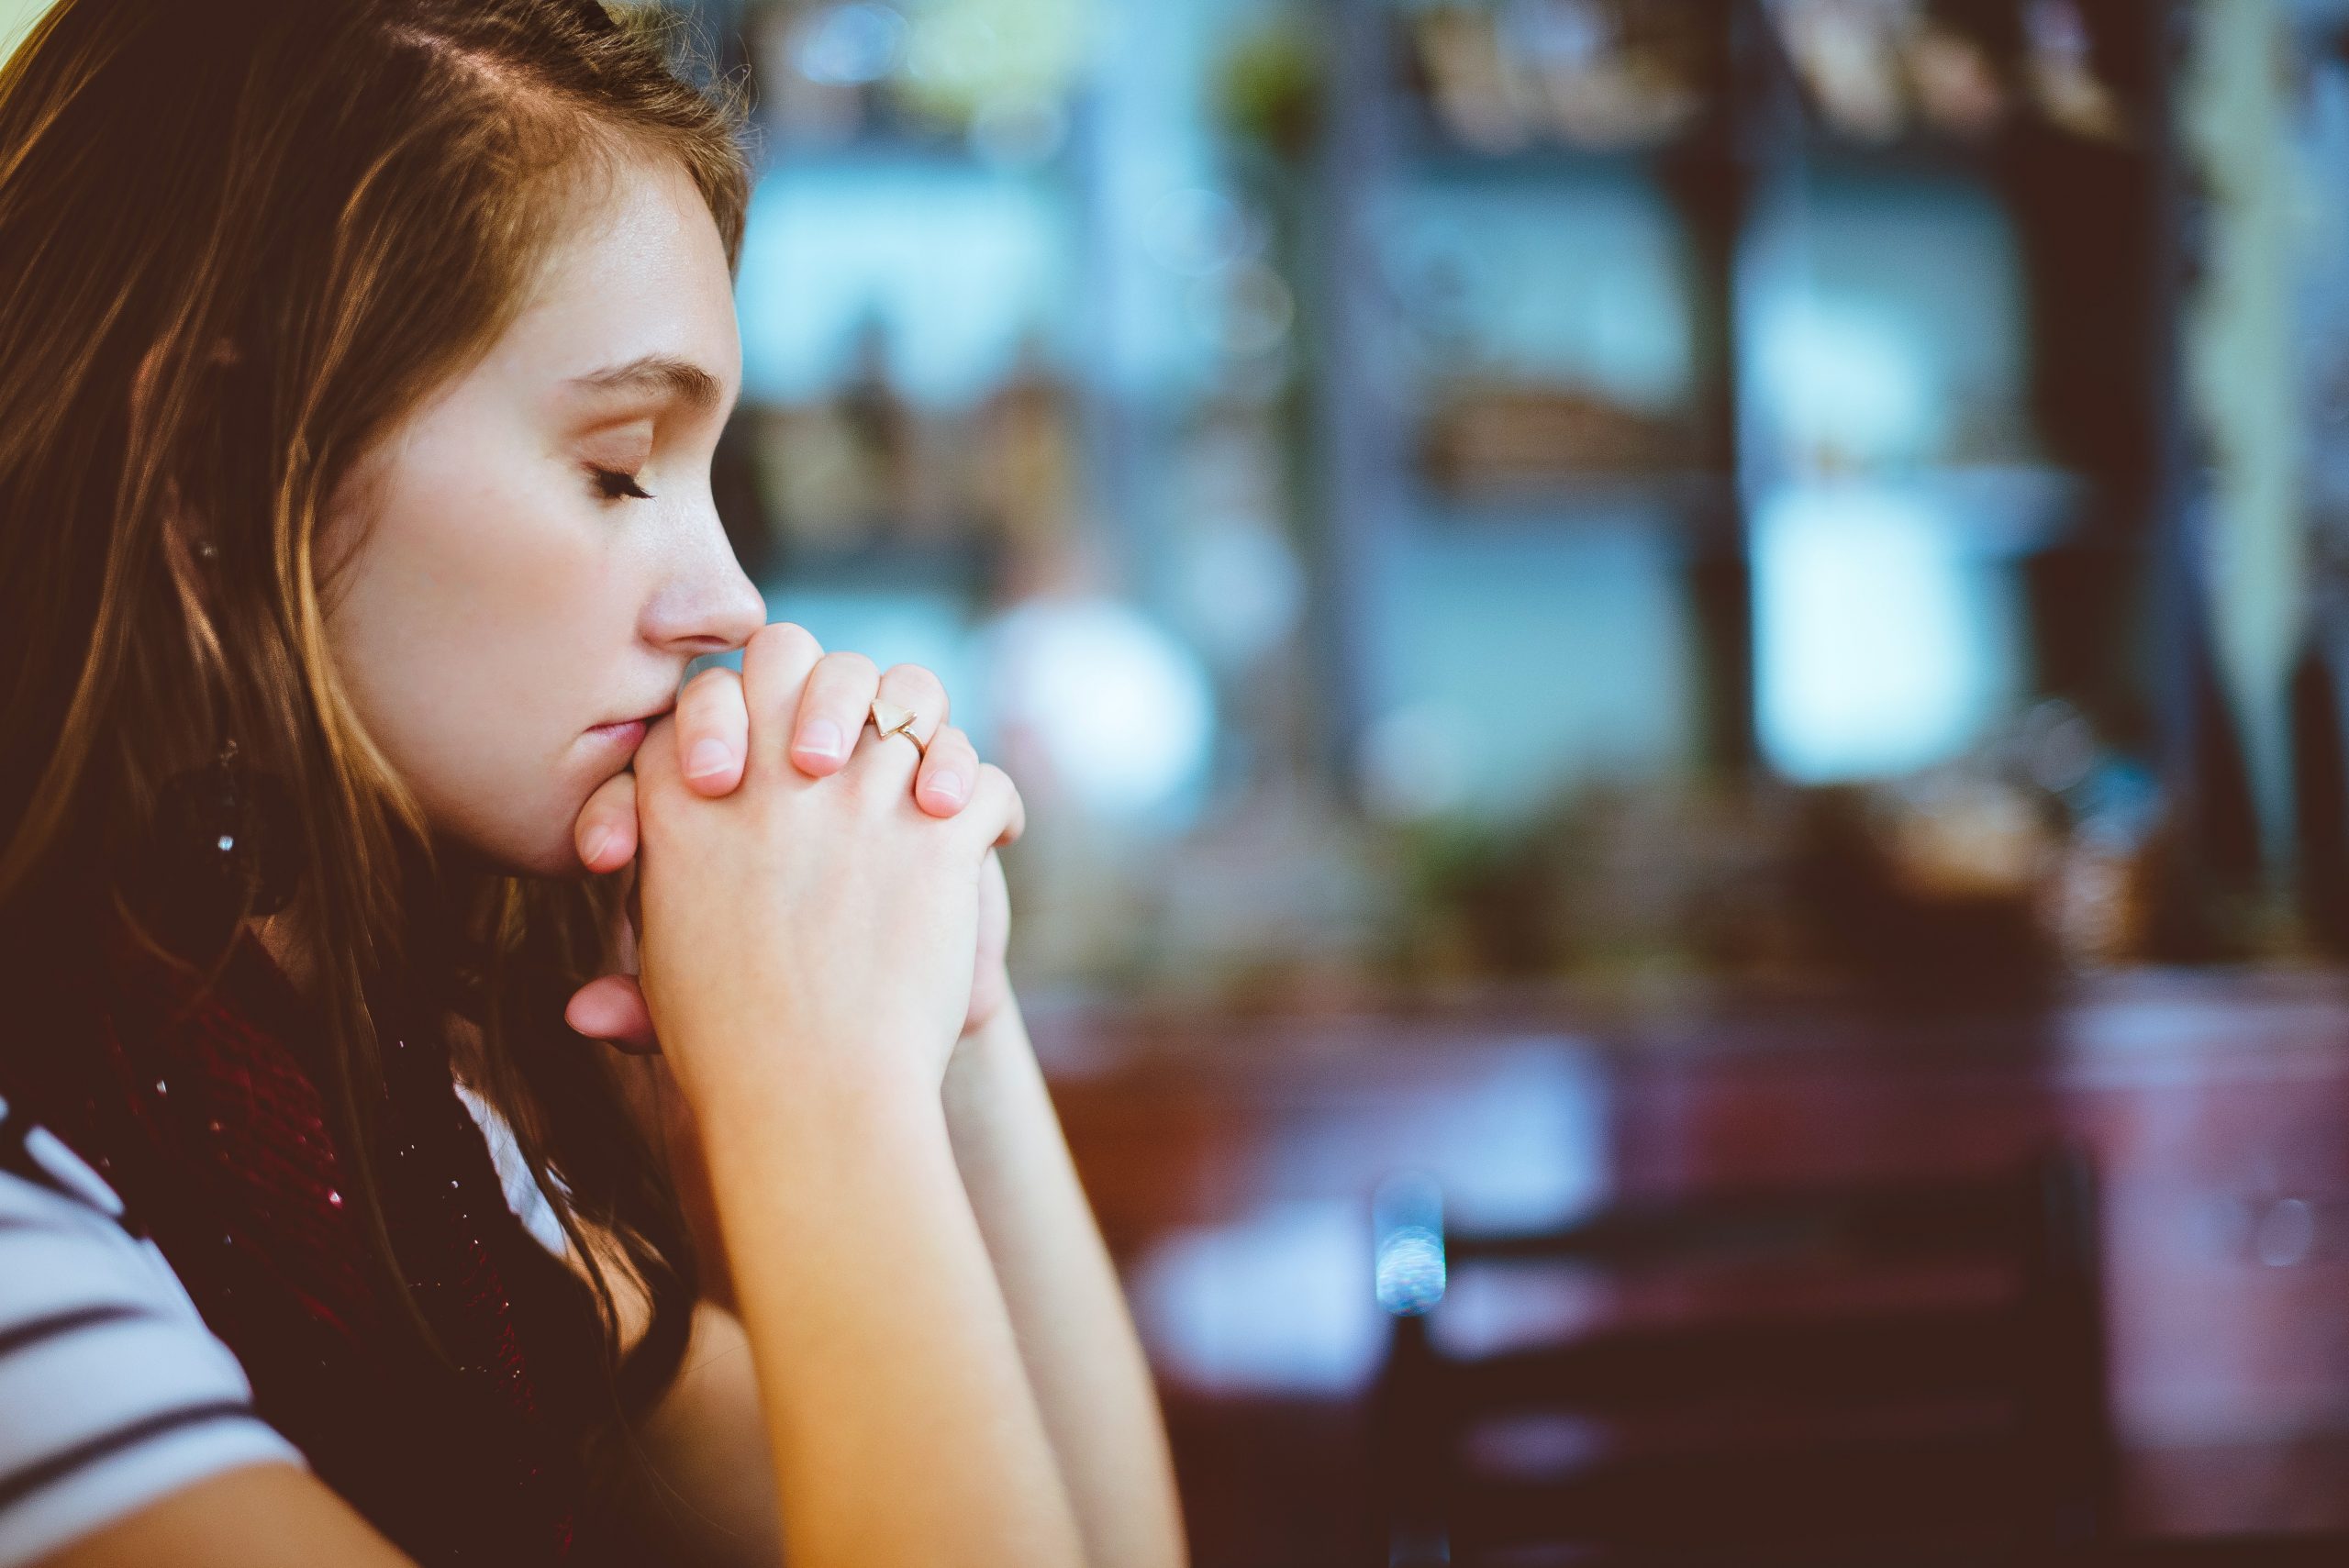 Woman in Church Praying